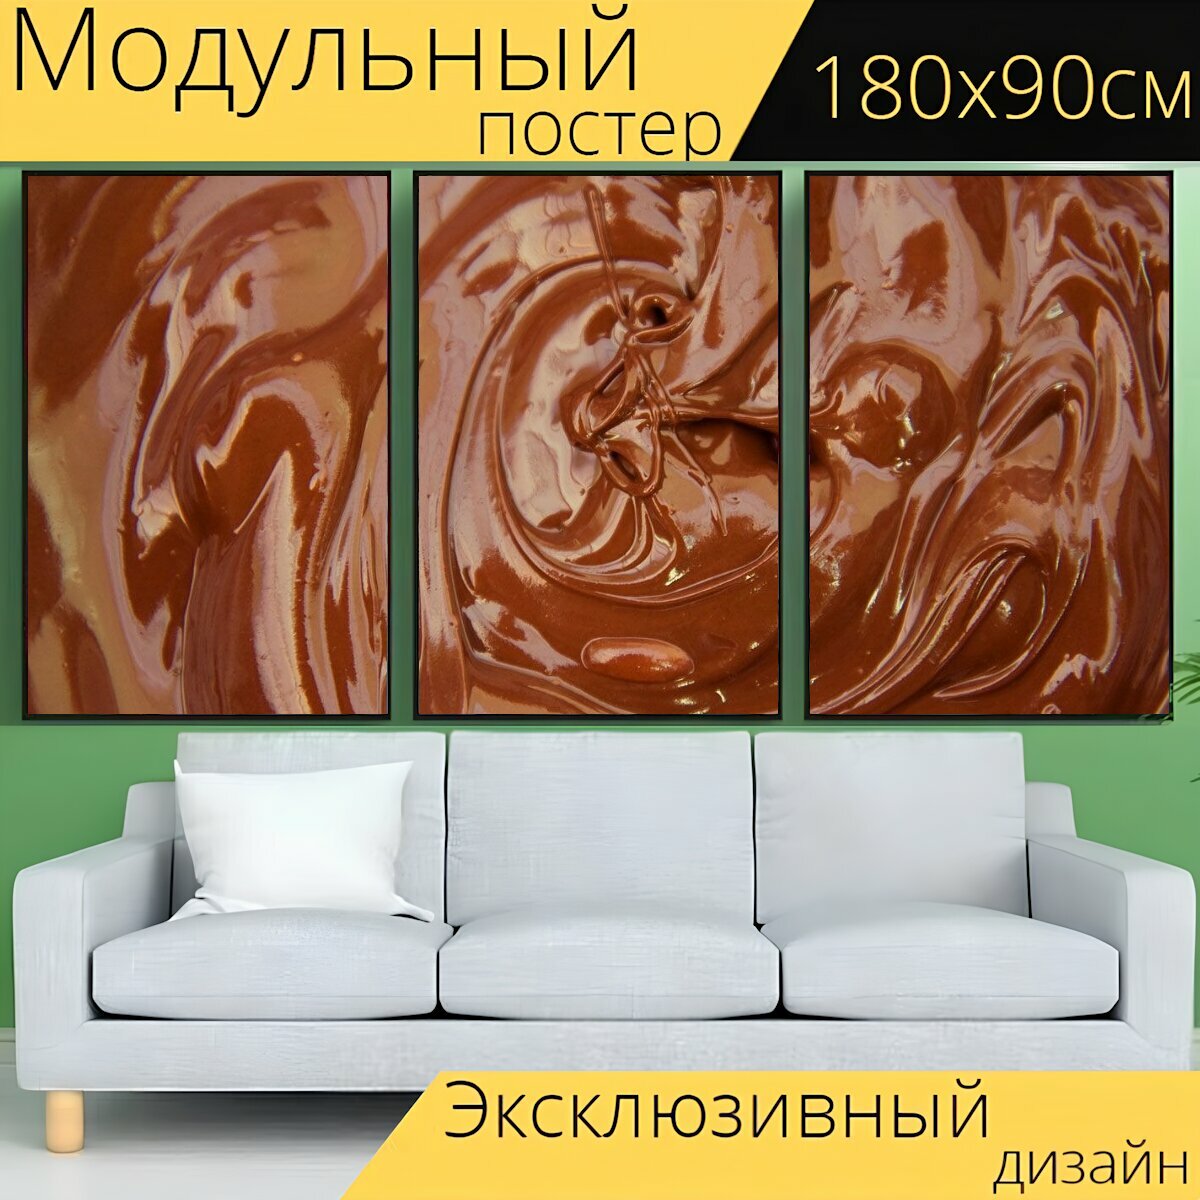 Модульный постер "Шоколад, крем, еда" 180 x 90 см. для интерьера